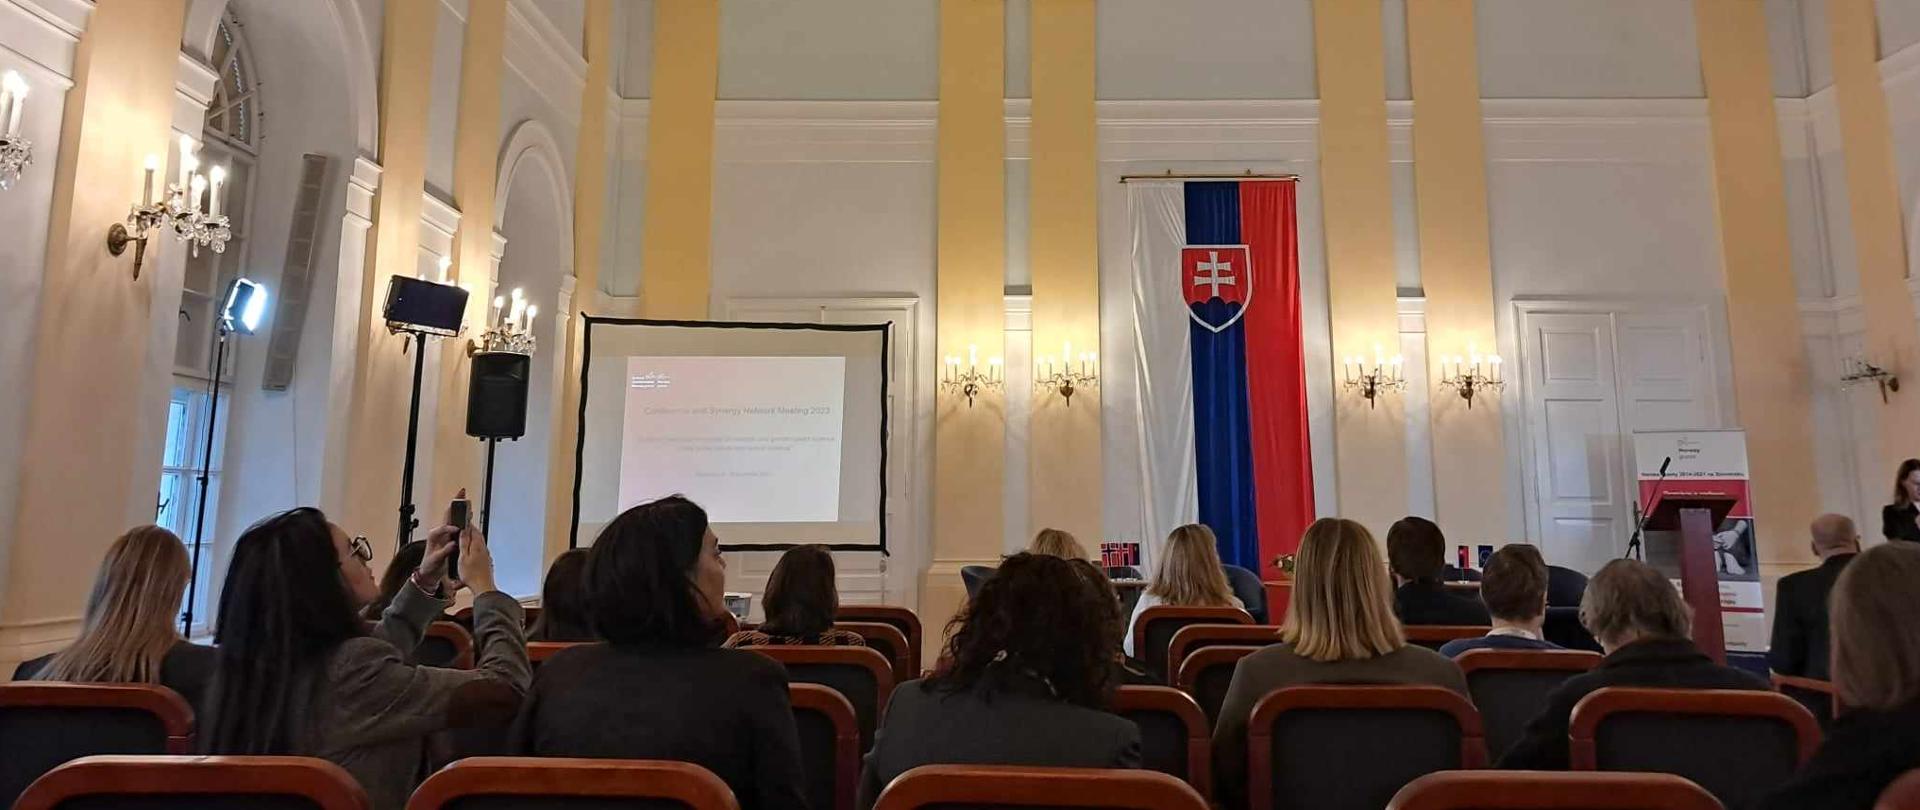 Na pierwszym planie widać siedzące osoby uczestniczące w konferencji. Na drugim planie widać flagę oraz mównicę. 